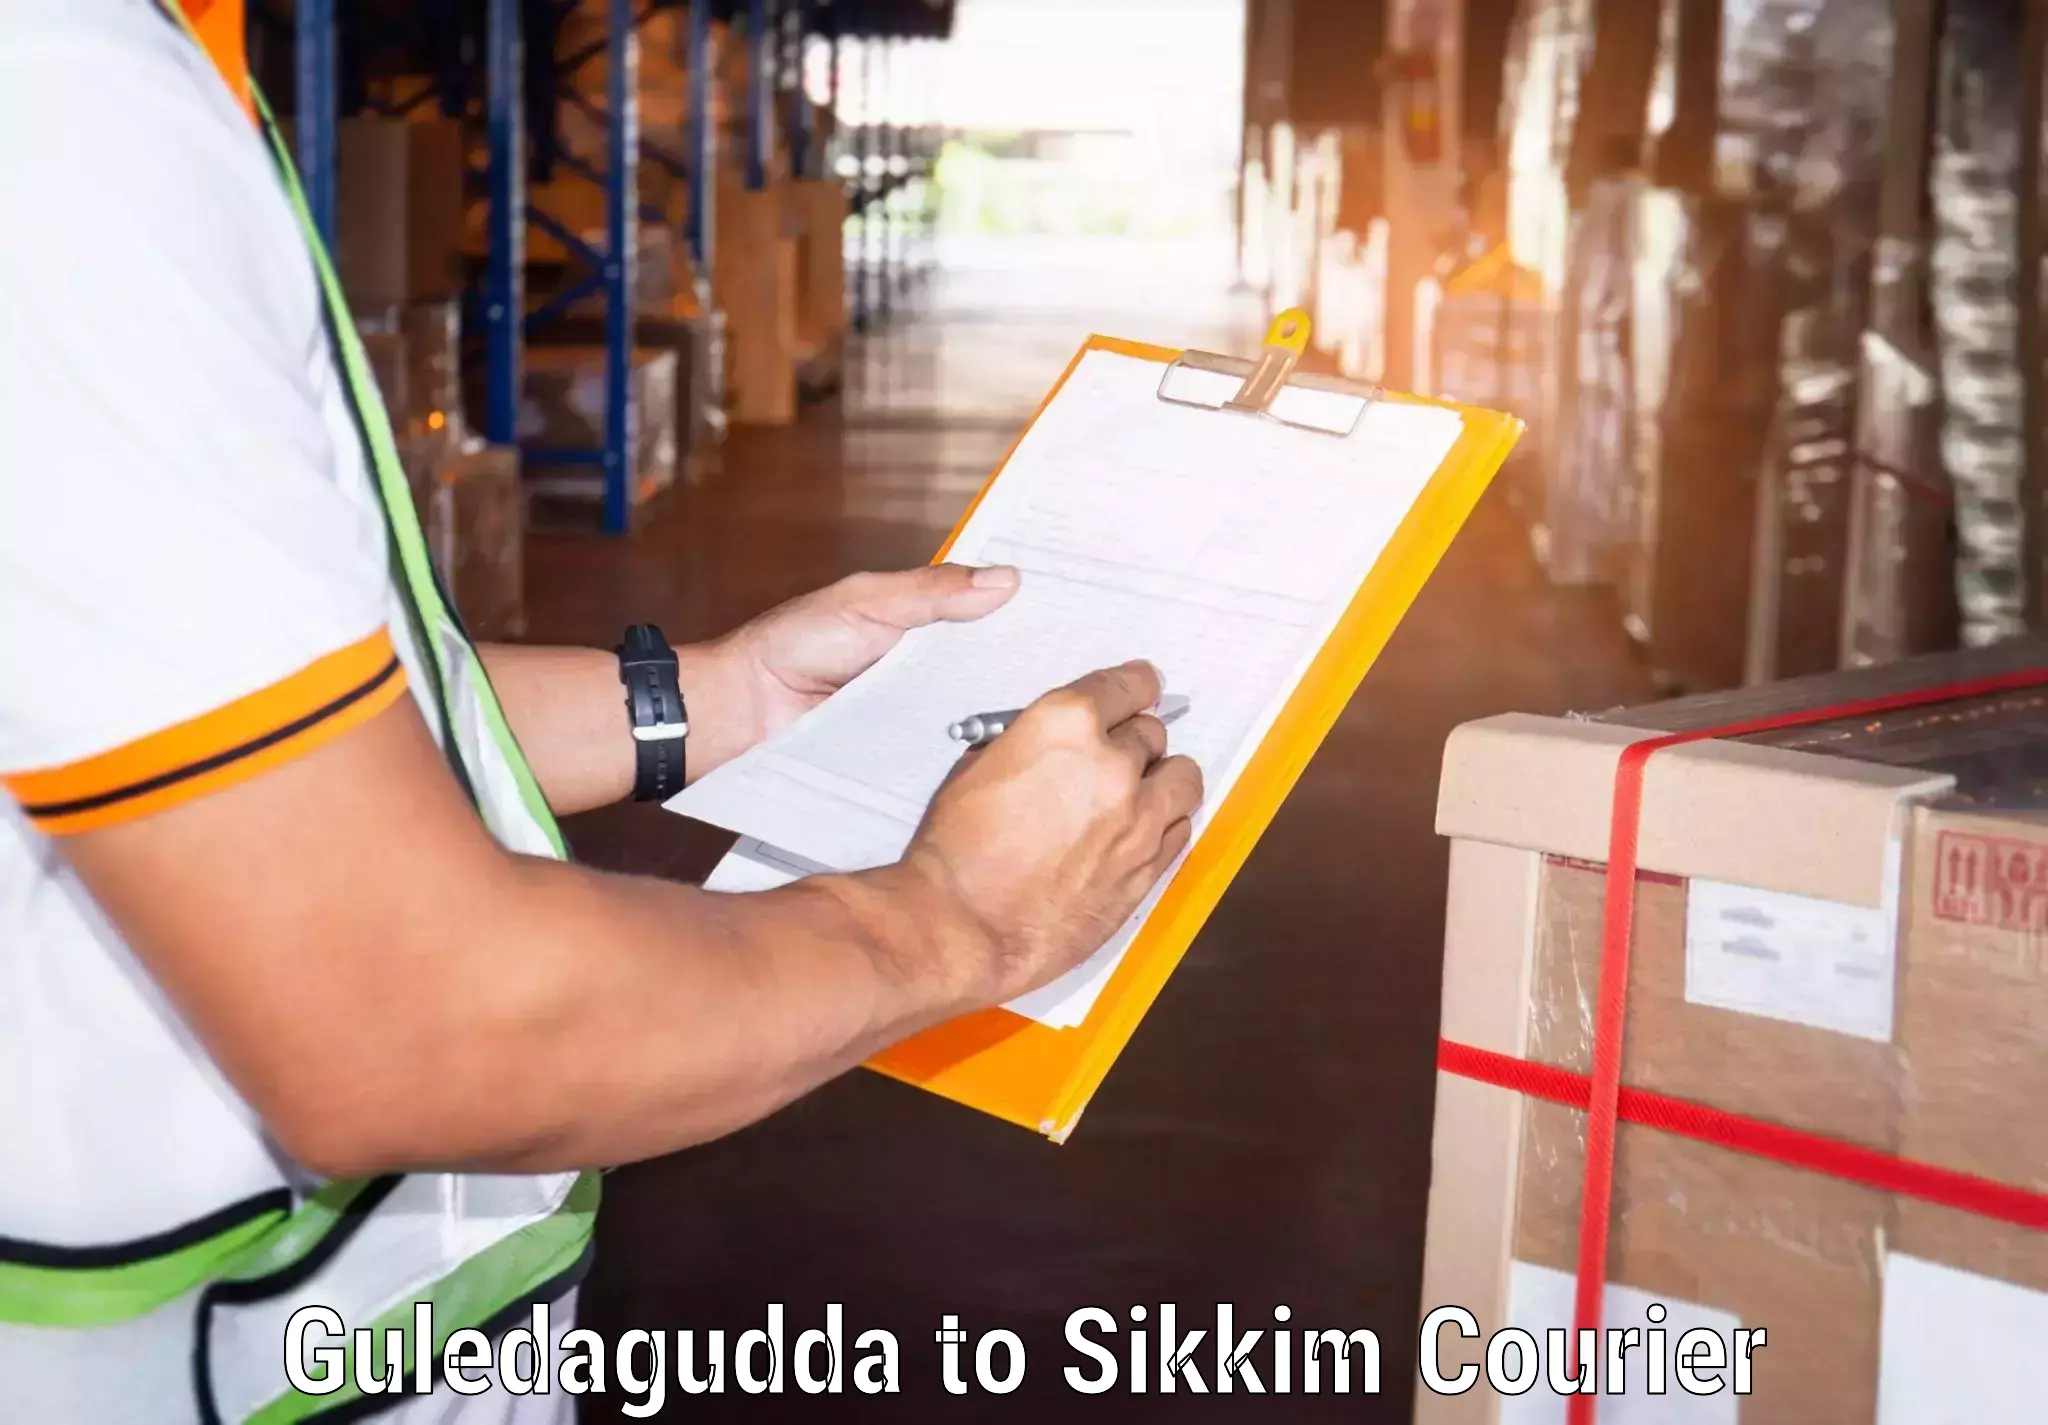 Nationwide delivery network Guledagudda to North Sikkim